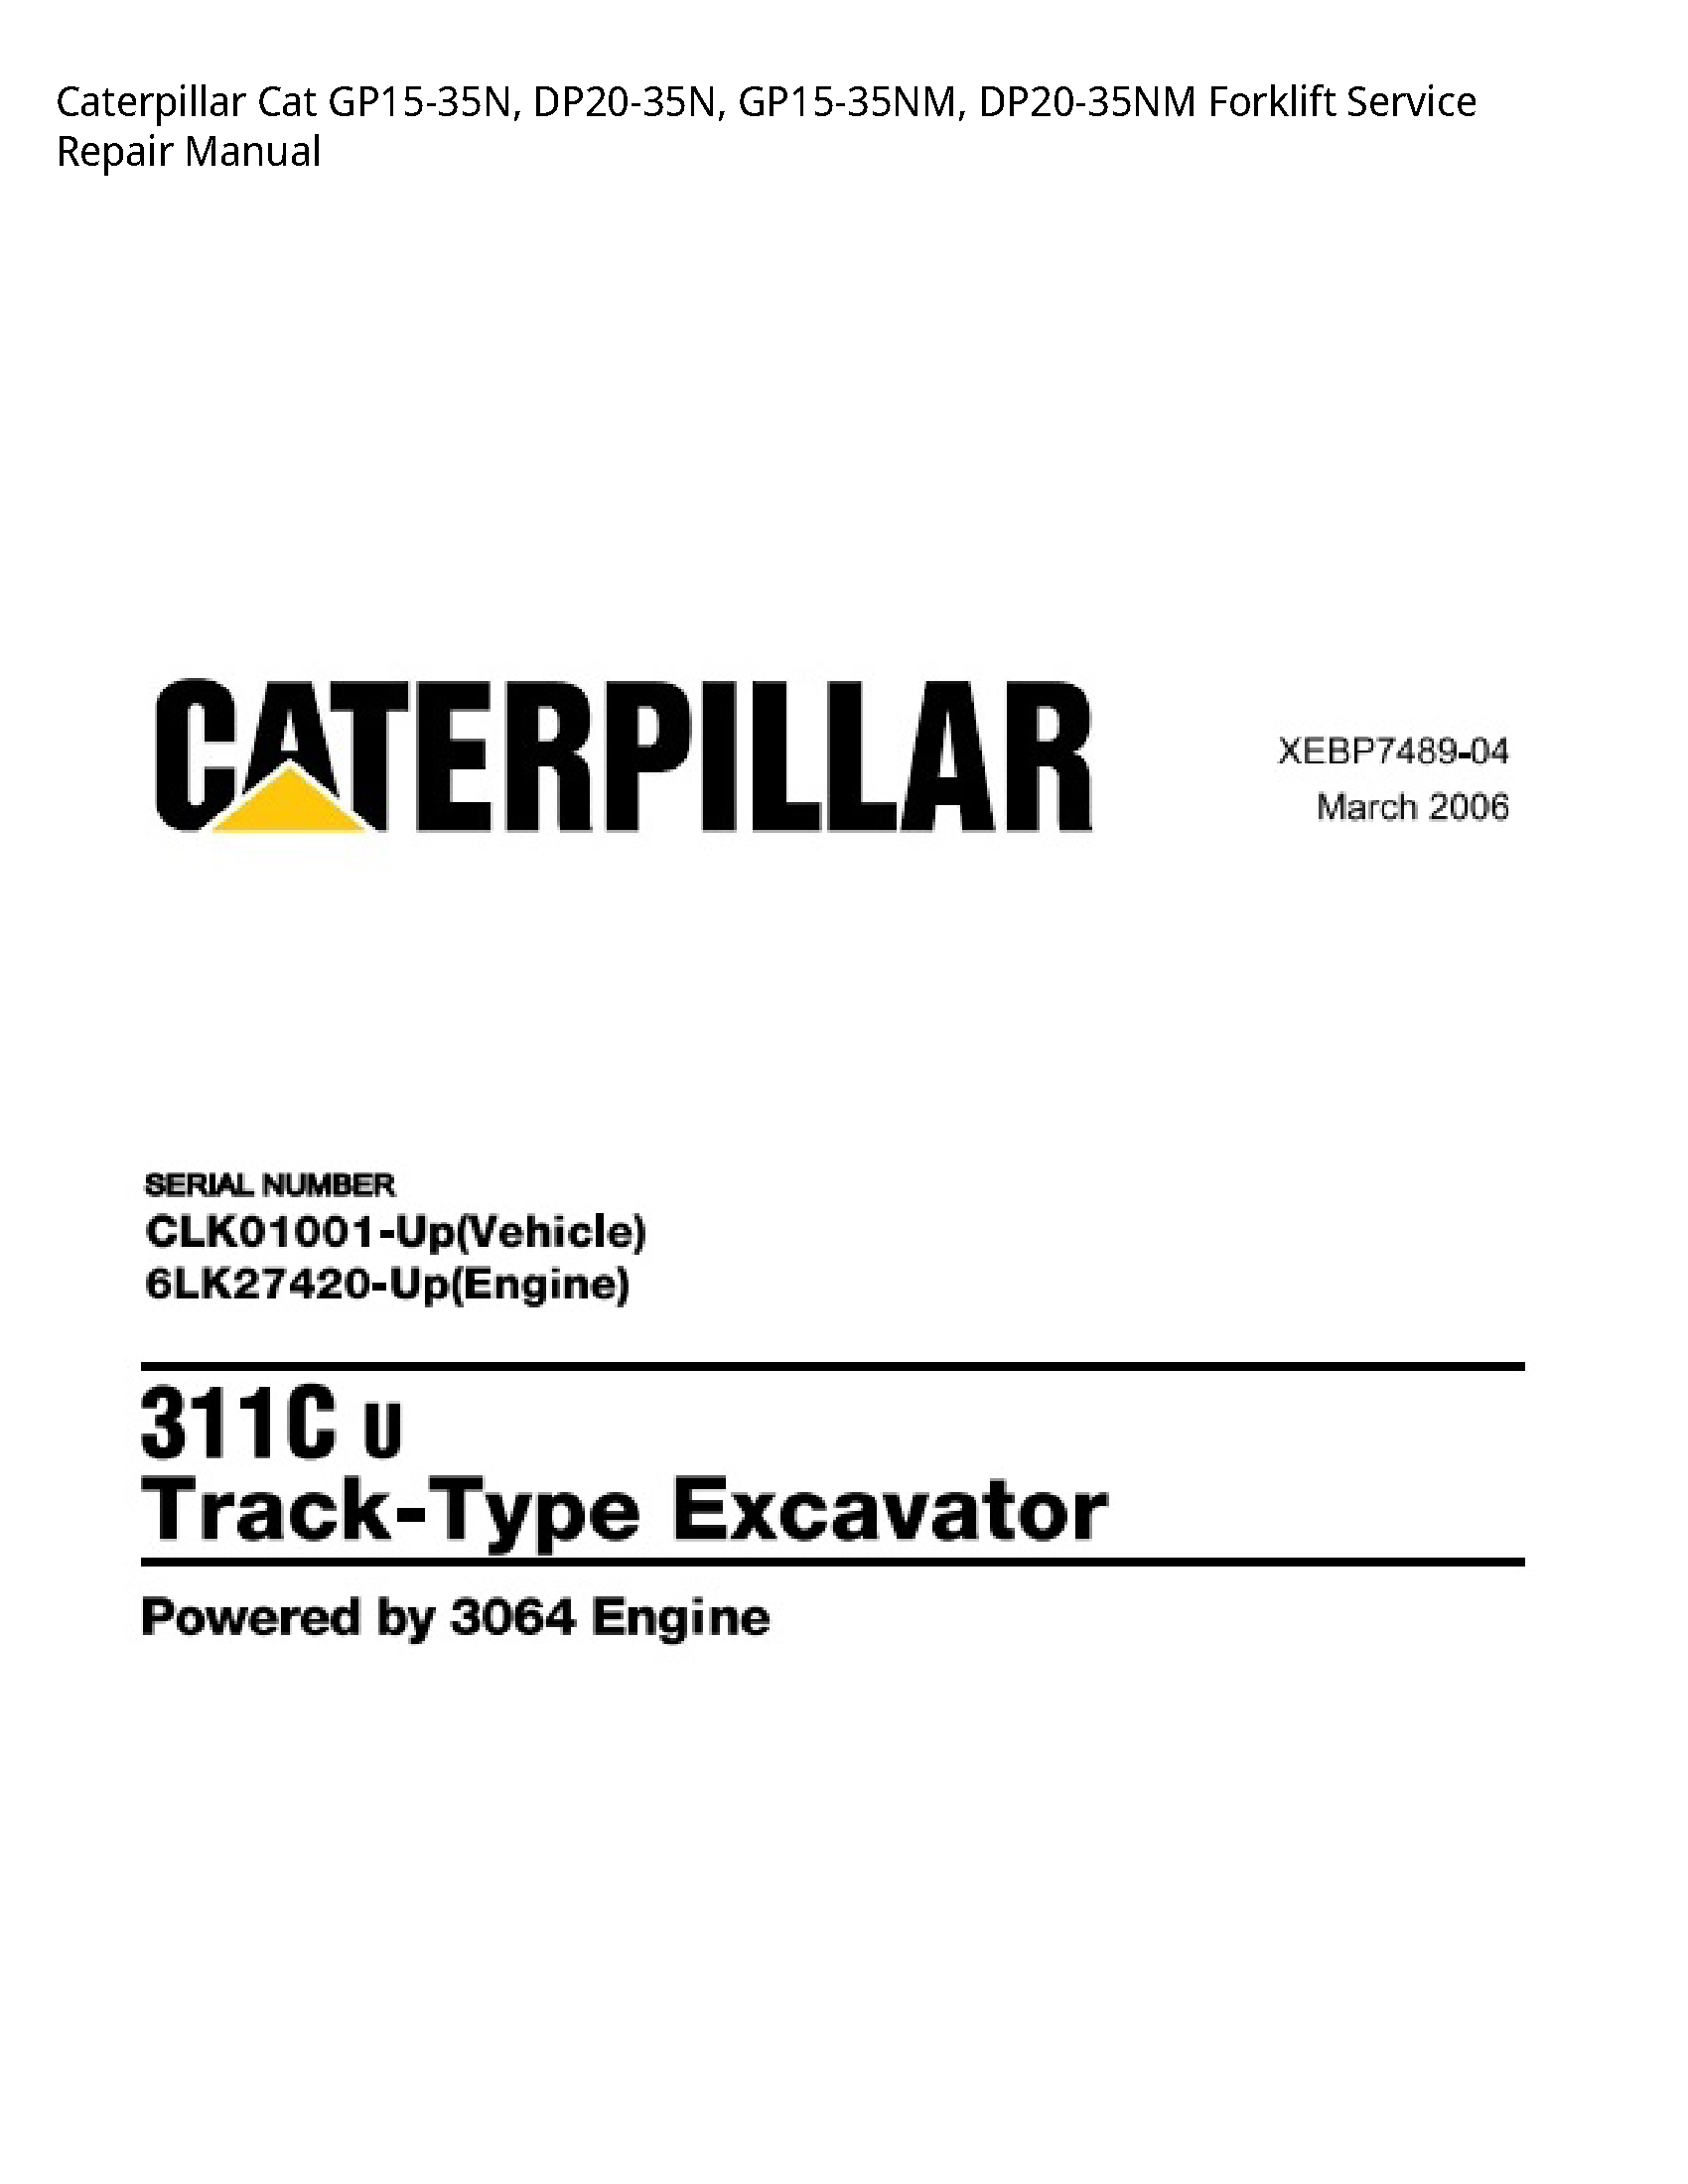 Caterpillar GP15-35N Cat Forklift manual